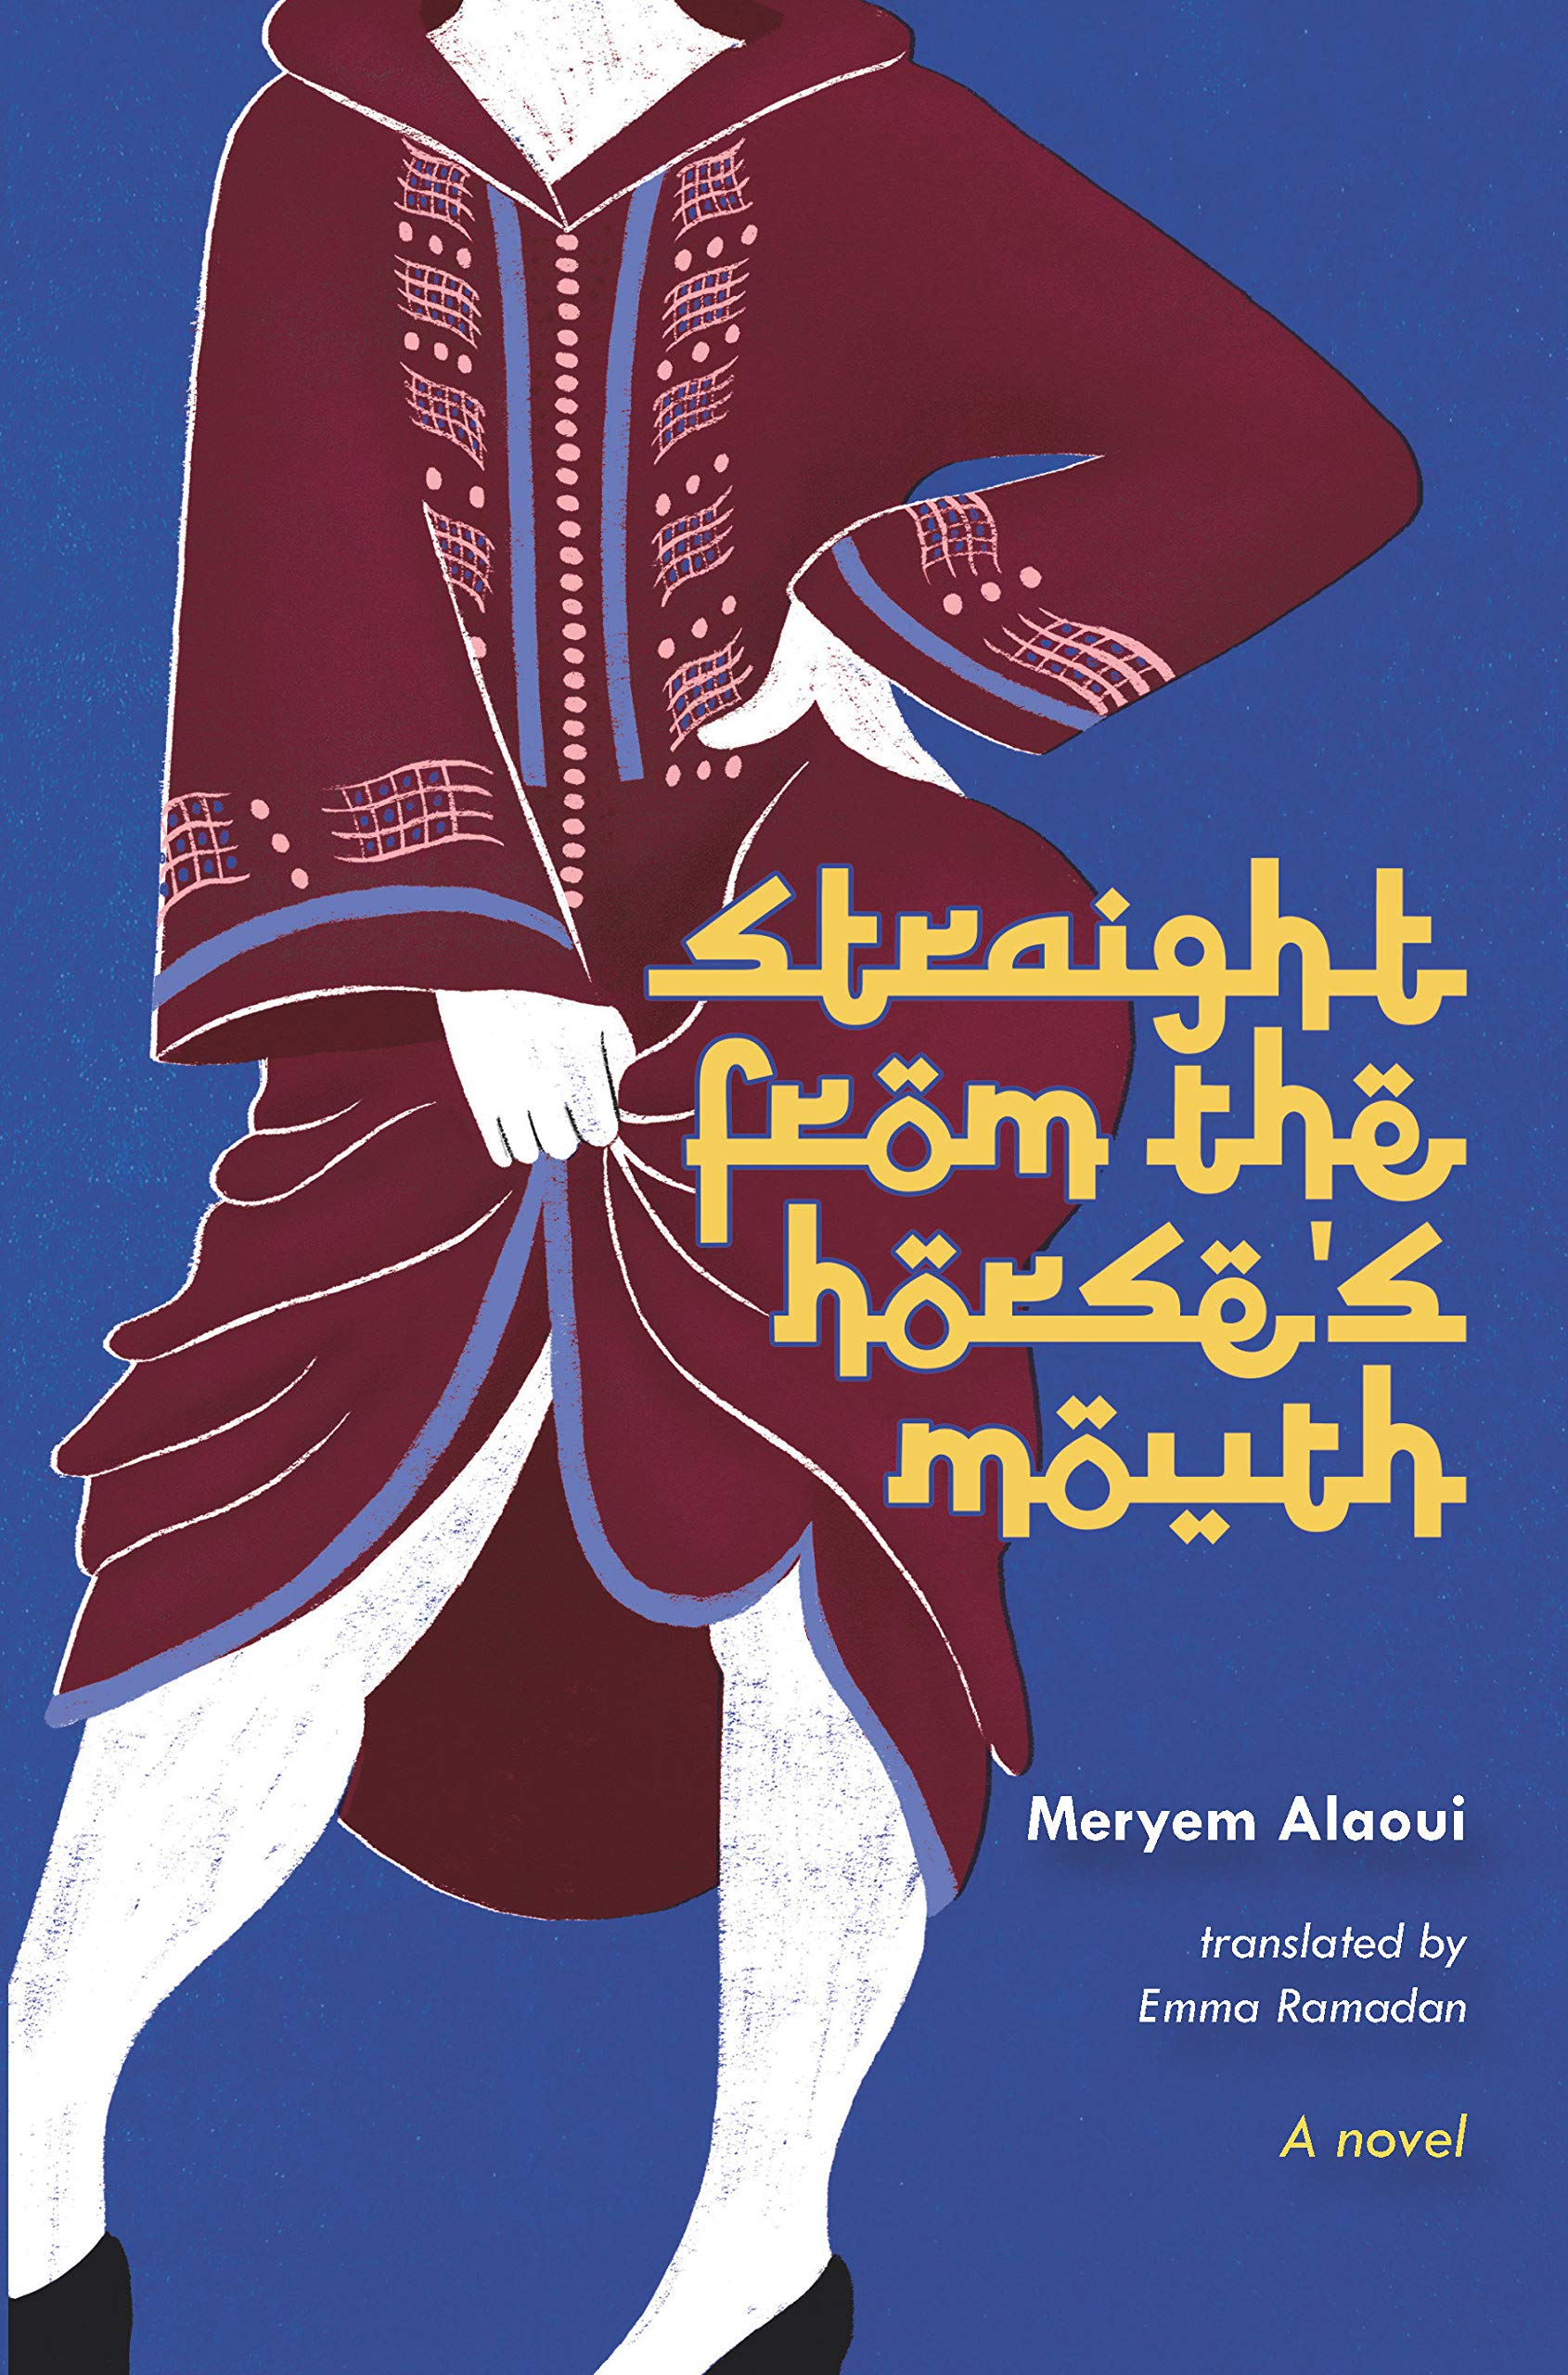 Cover von Meryem Alaouis "Straight from the horse's mouth", ins Englische übersetzt von Emma Ramadan (erschienen bei Other Press)